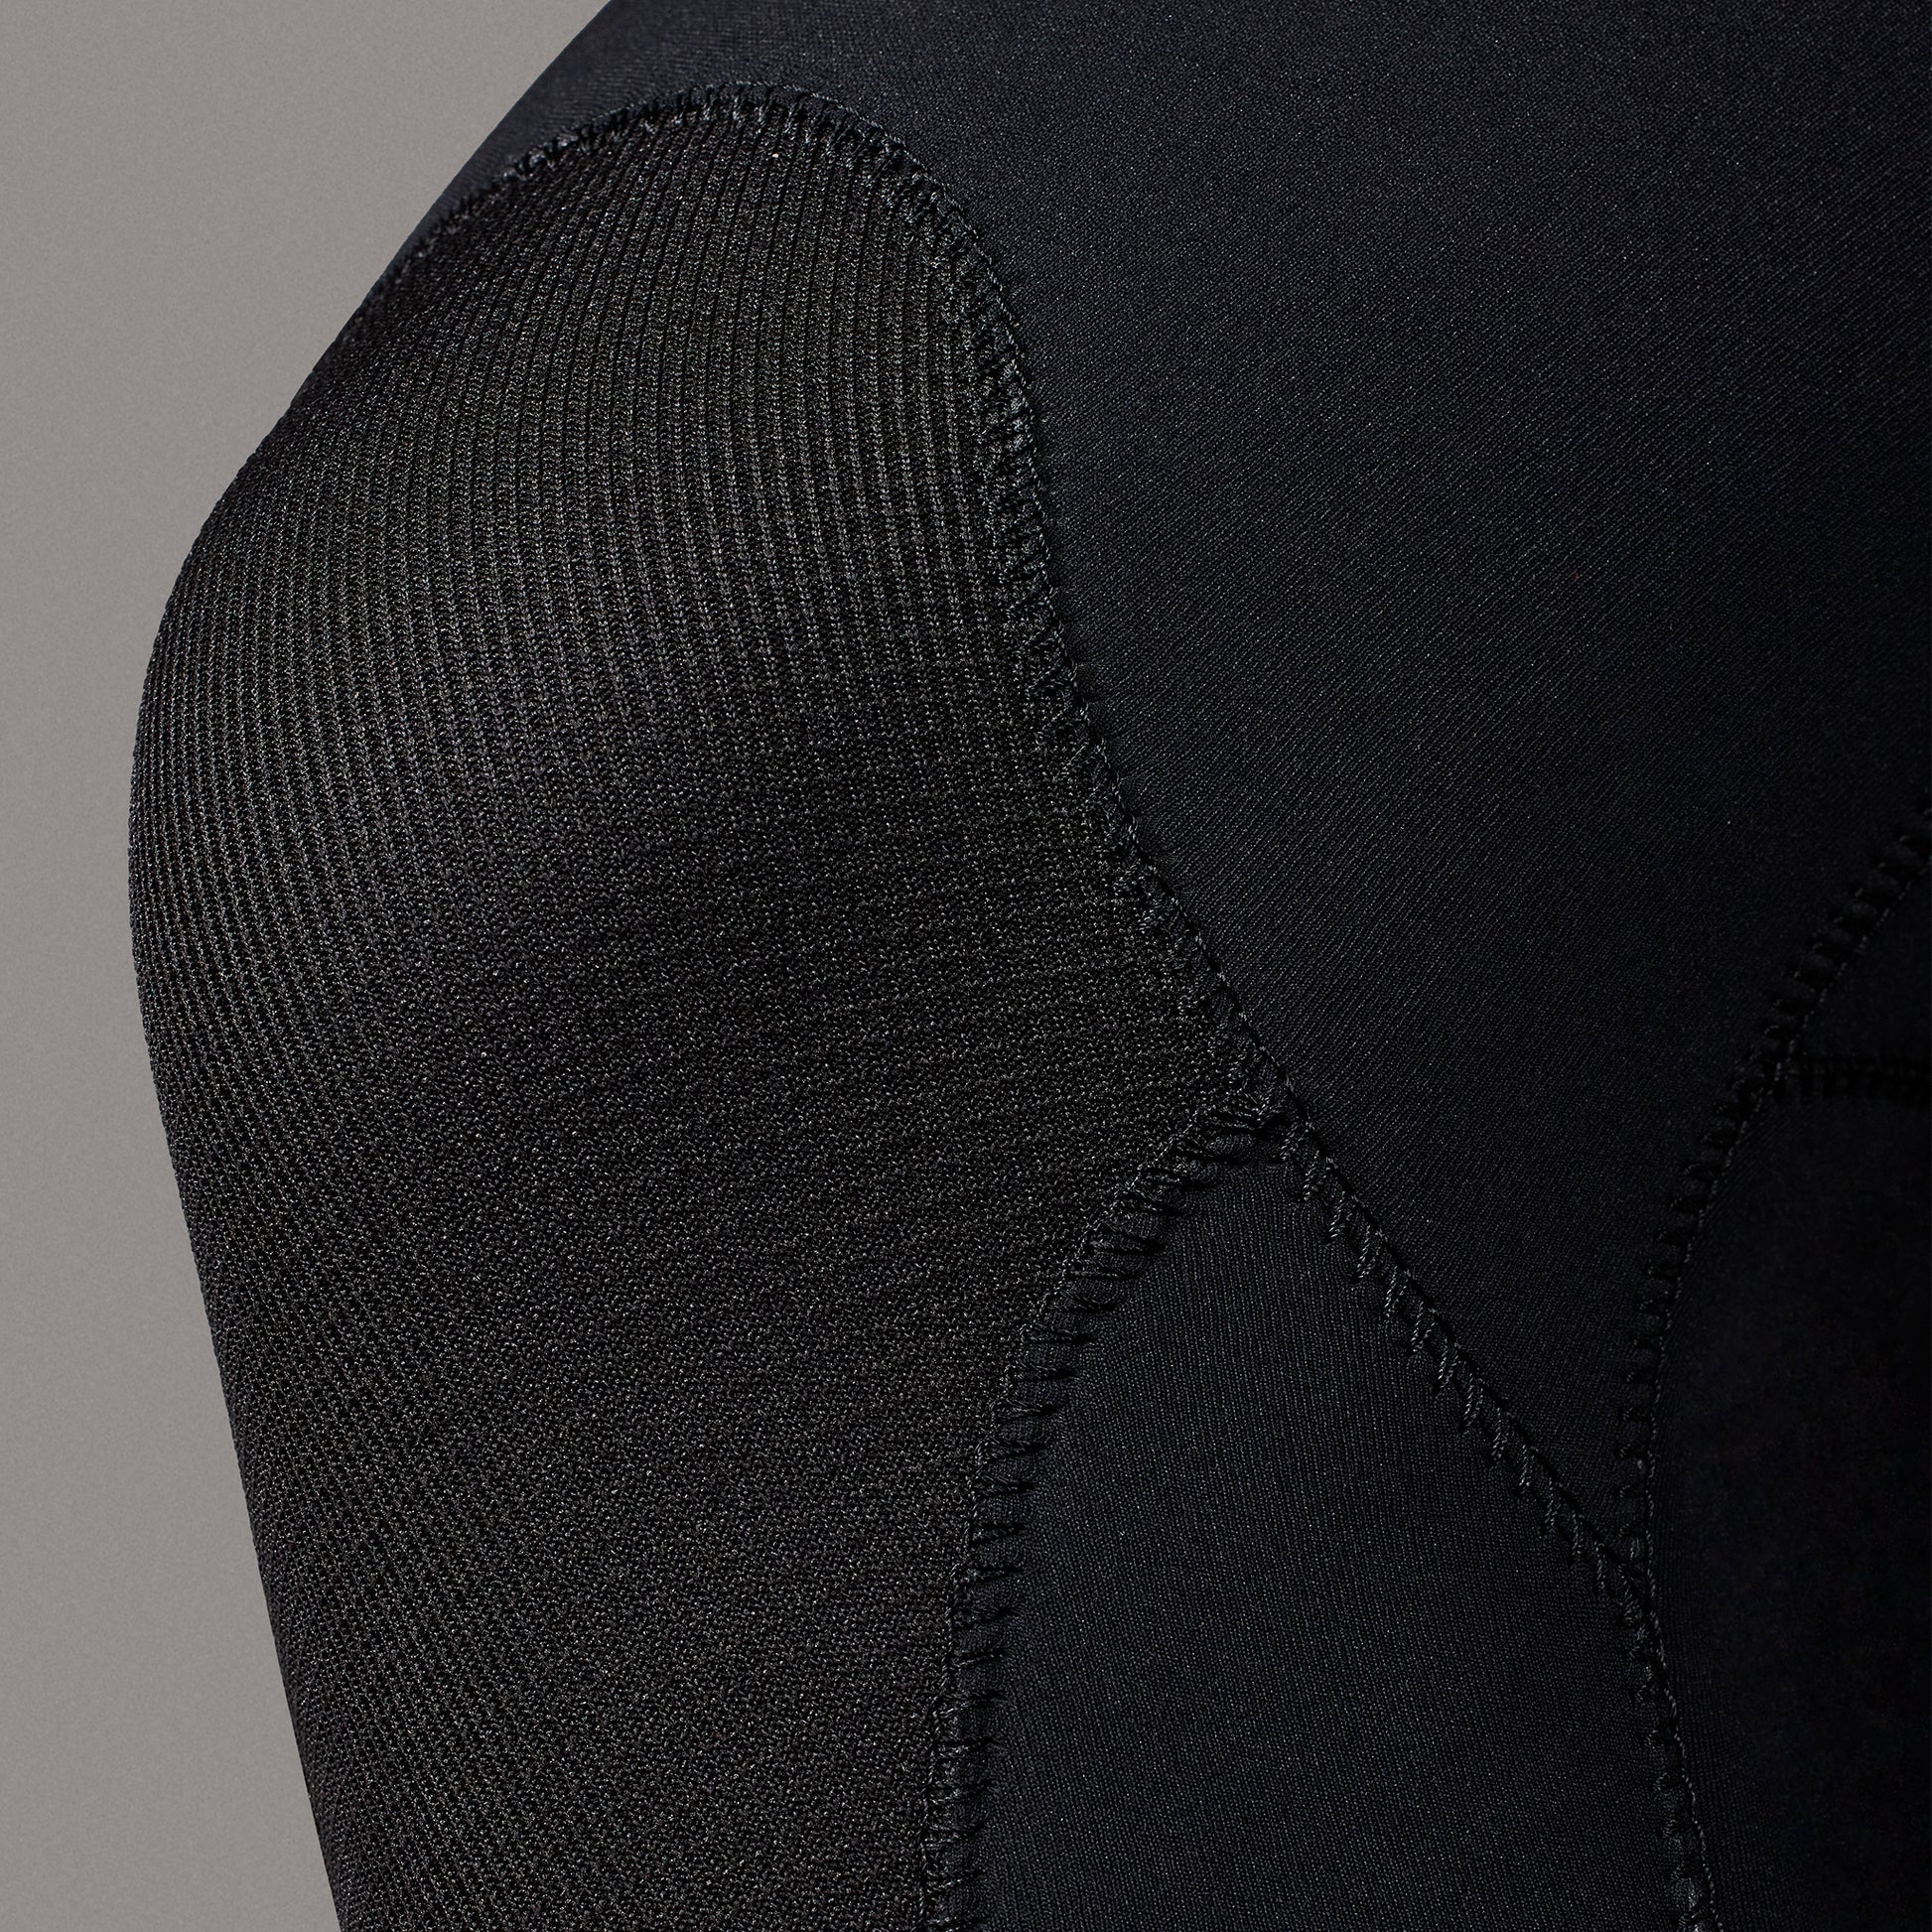 Women's Axis X Back Zip Full Wetsuit 3/2mm